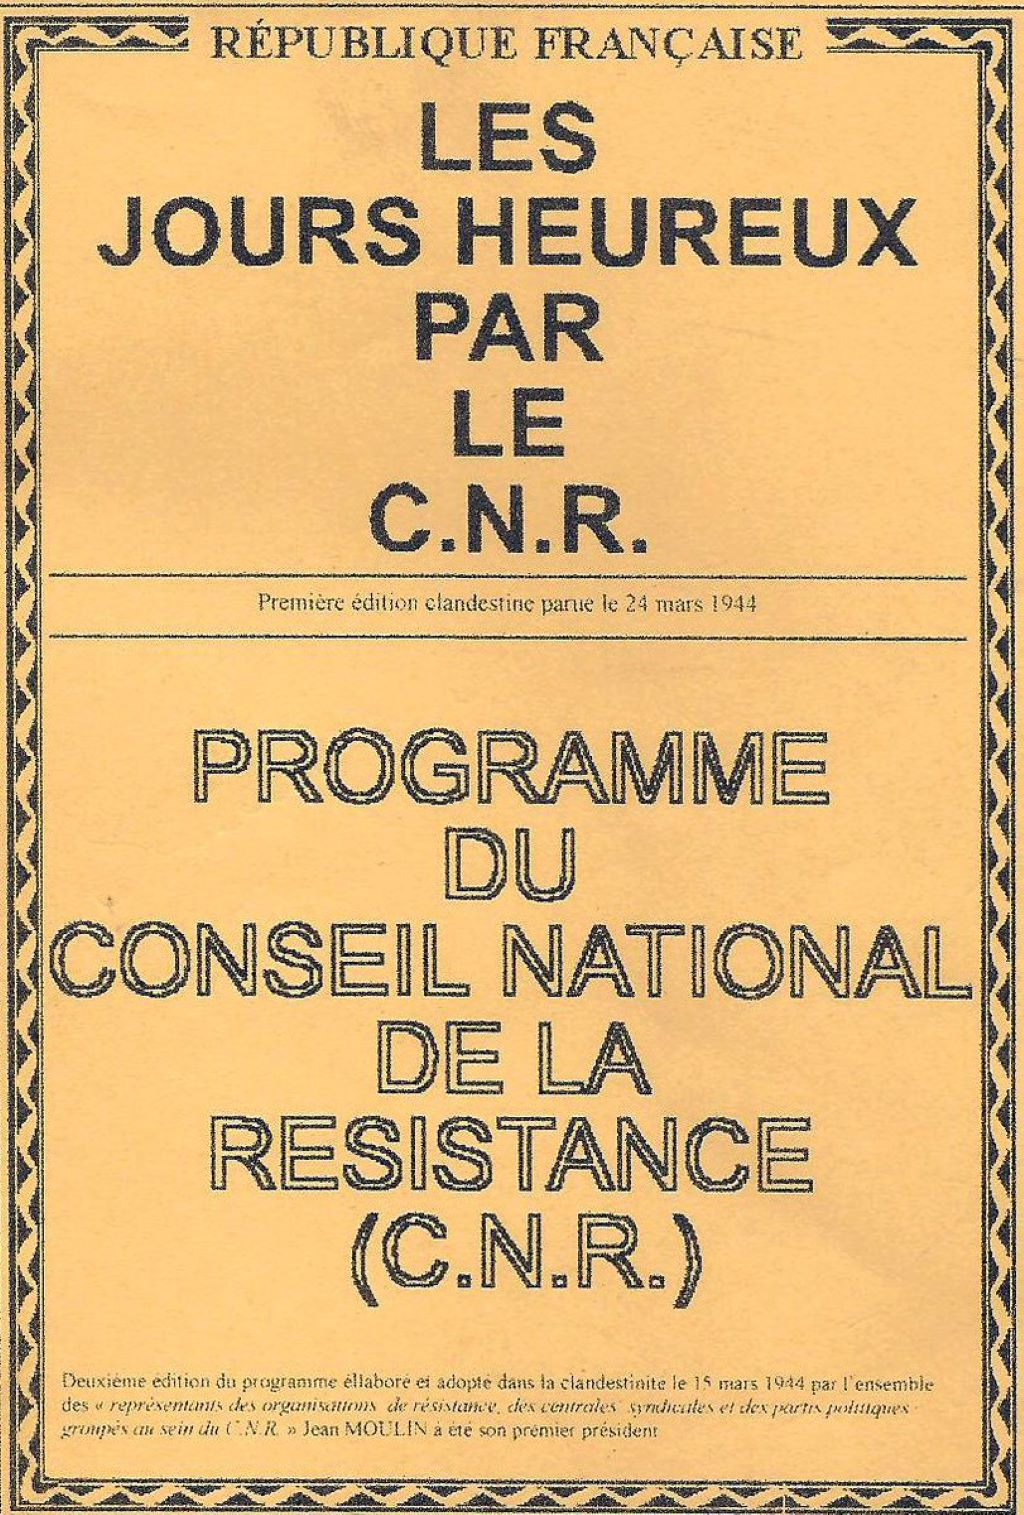 1944 : Programme du Conseil National de la Résistance (France). - « Les socialistes avaient déjà élaboré dans l’entre-deux-guerres les bases d’une théorie économique marxo-keynésienne qui s’imposera au lendemain de la guerre et sera la base de l’Etat social. »